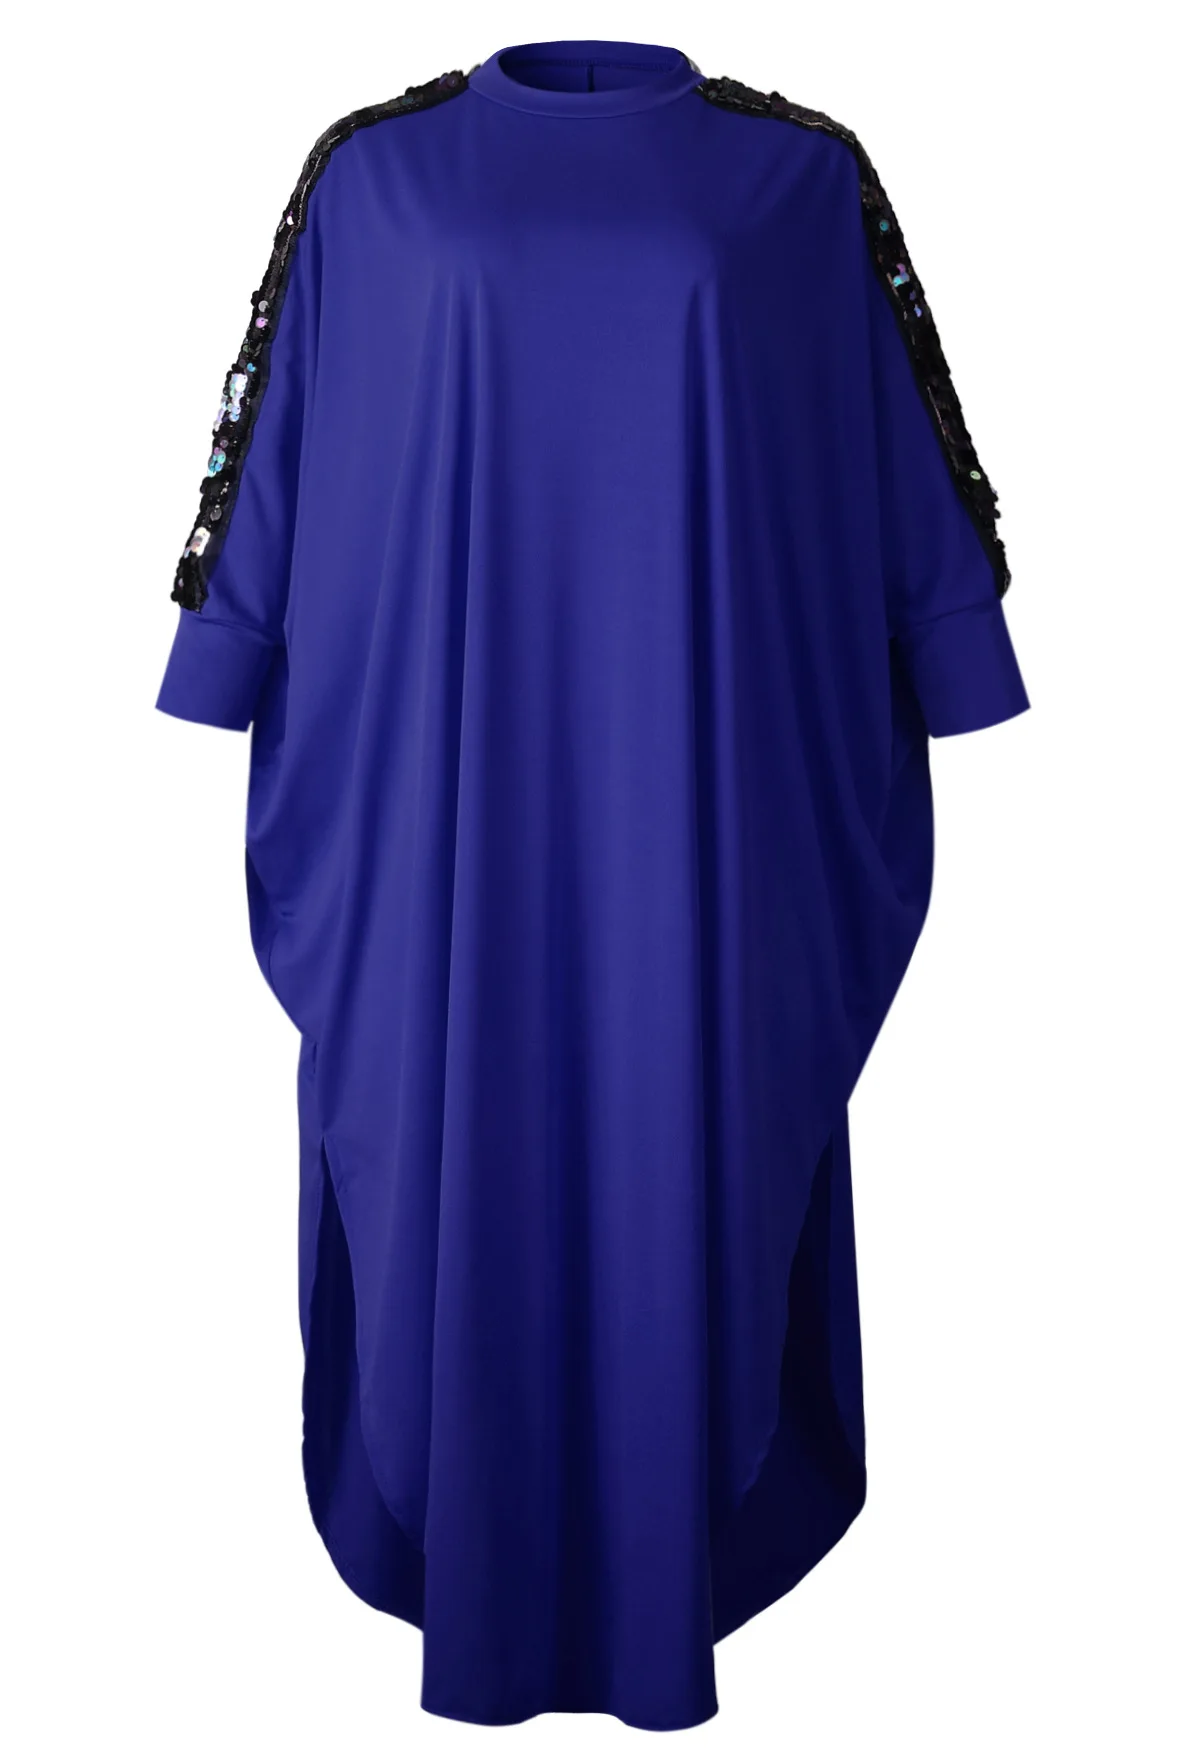 Дашики африканские платья для женщин 3XL размера плюс платье дамы блёстки Синий Красный традиционная африканская одежда Феи мечты